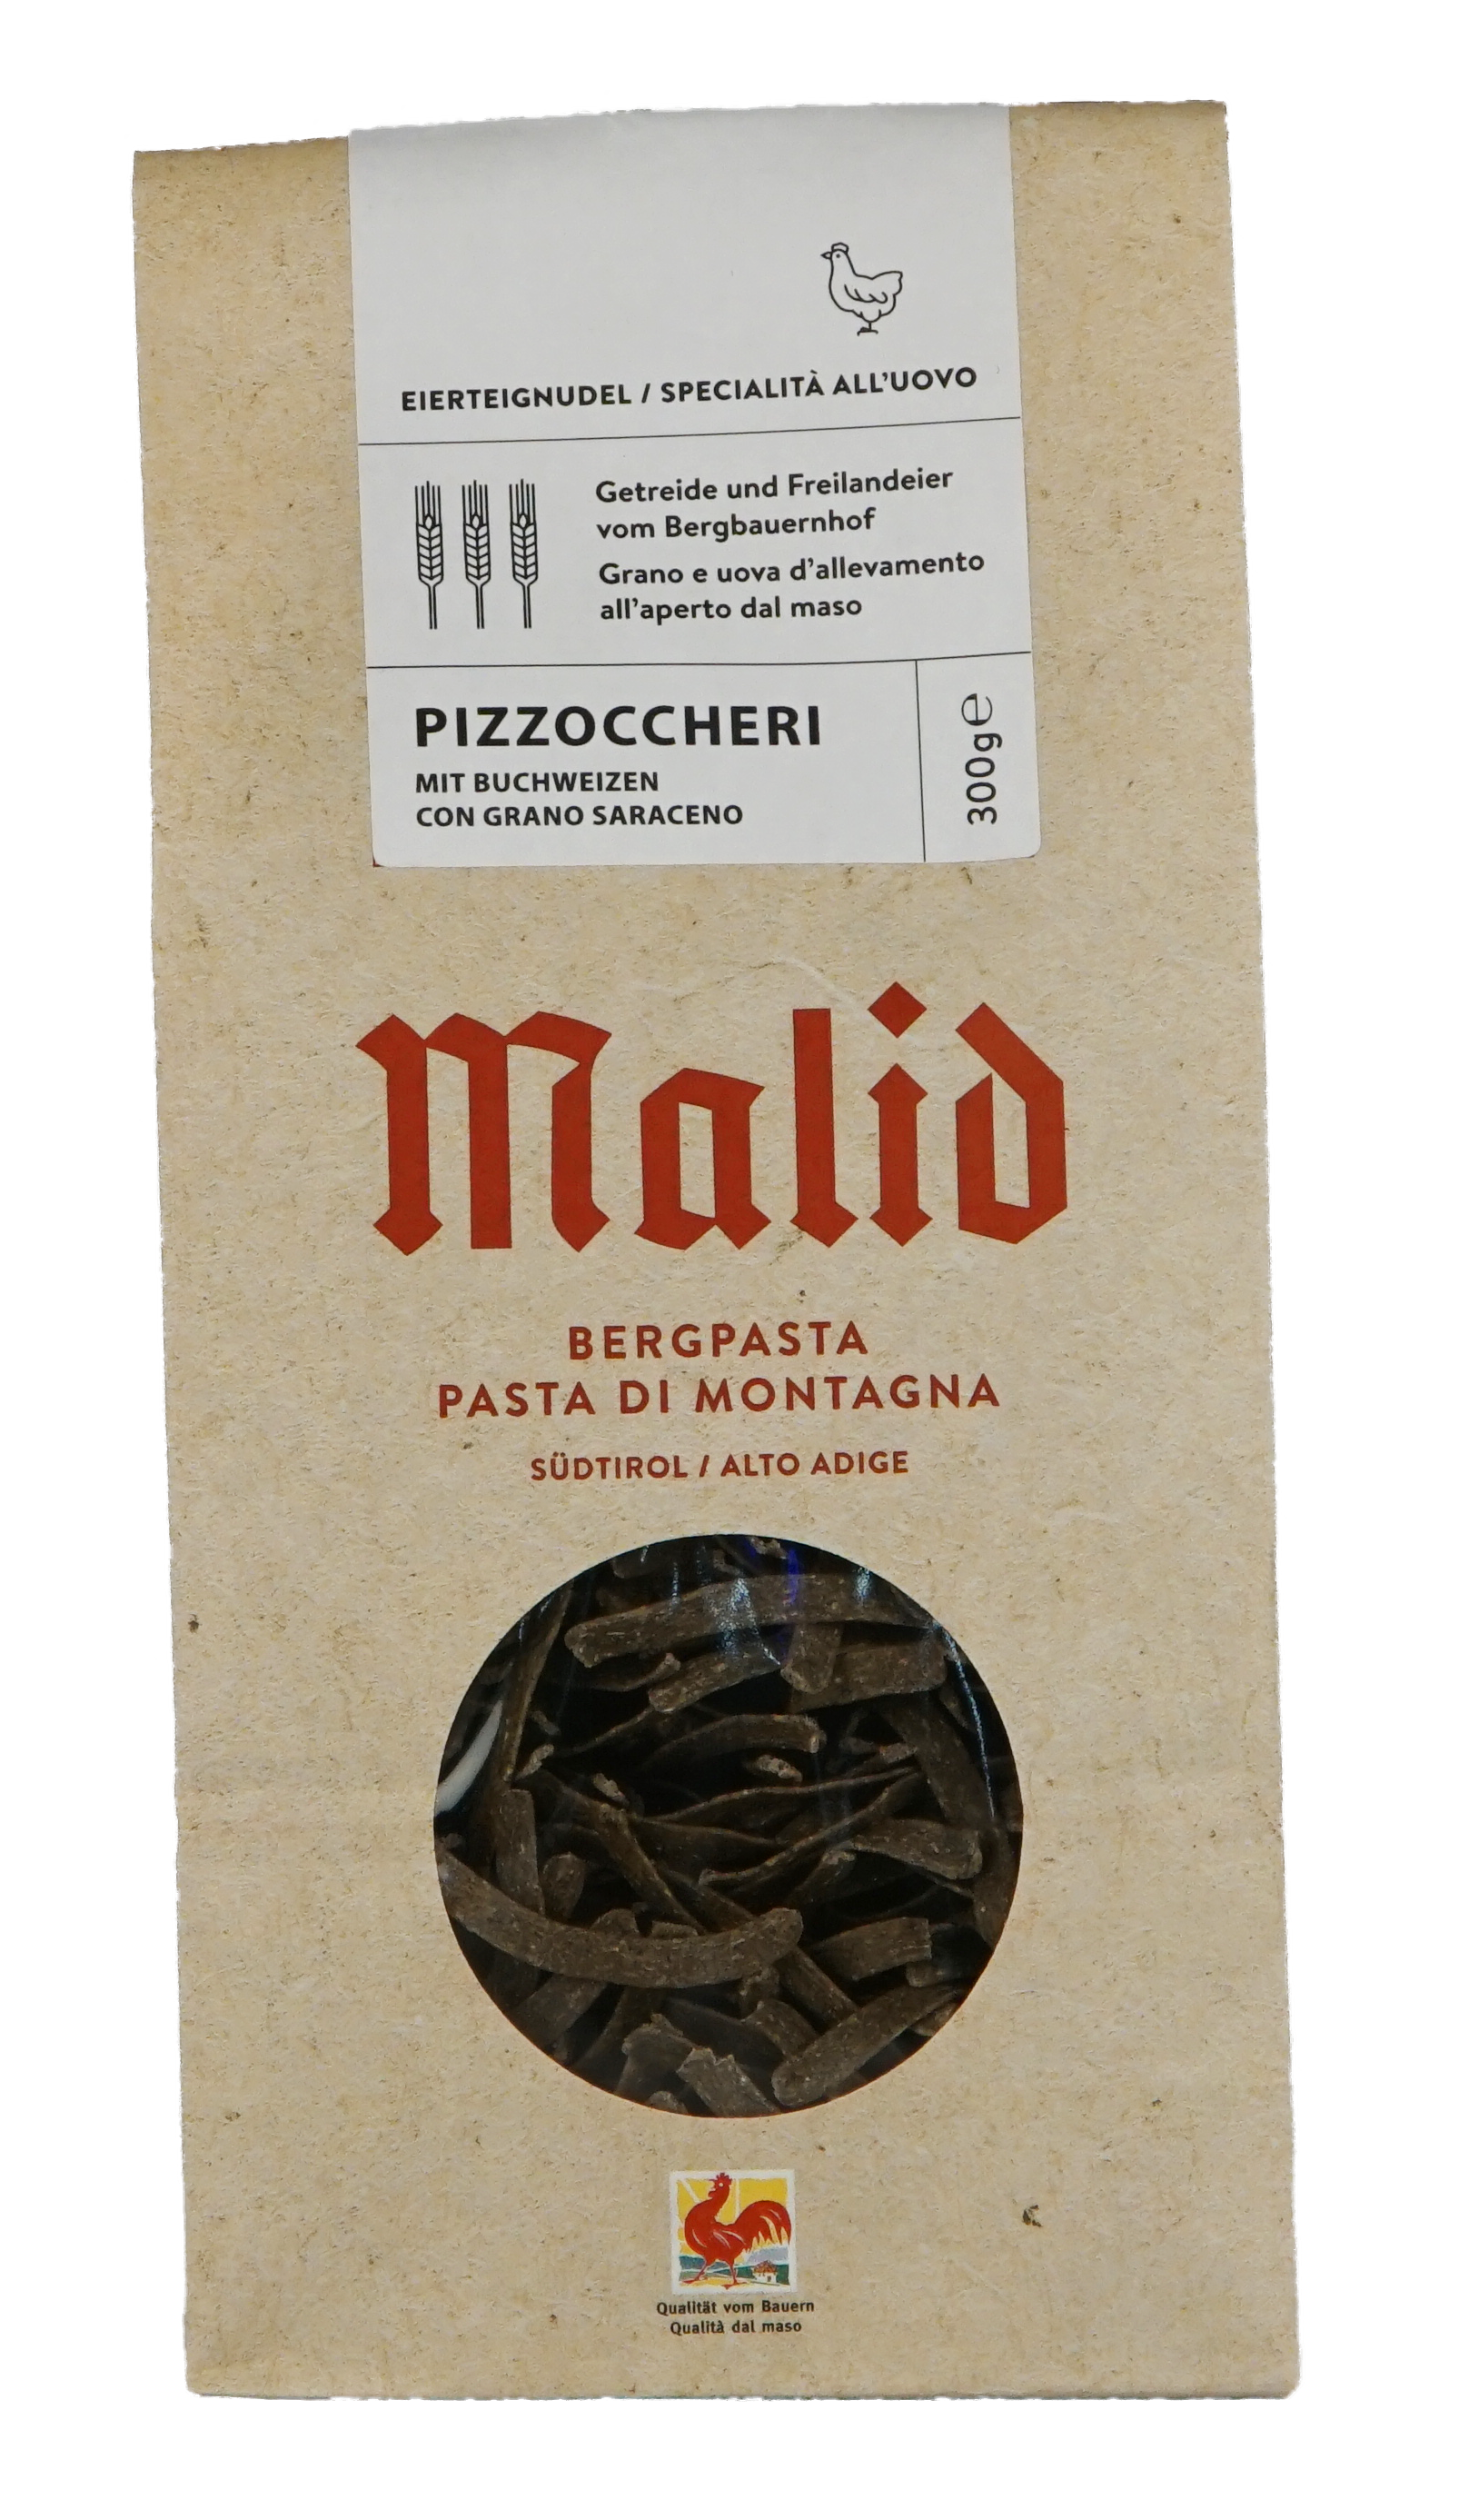 Bergpasta Pizzoccheri mit Buchweizen Malid 300g